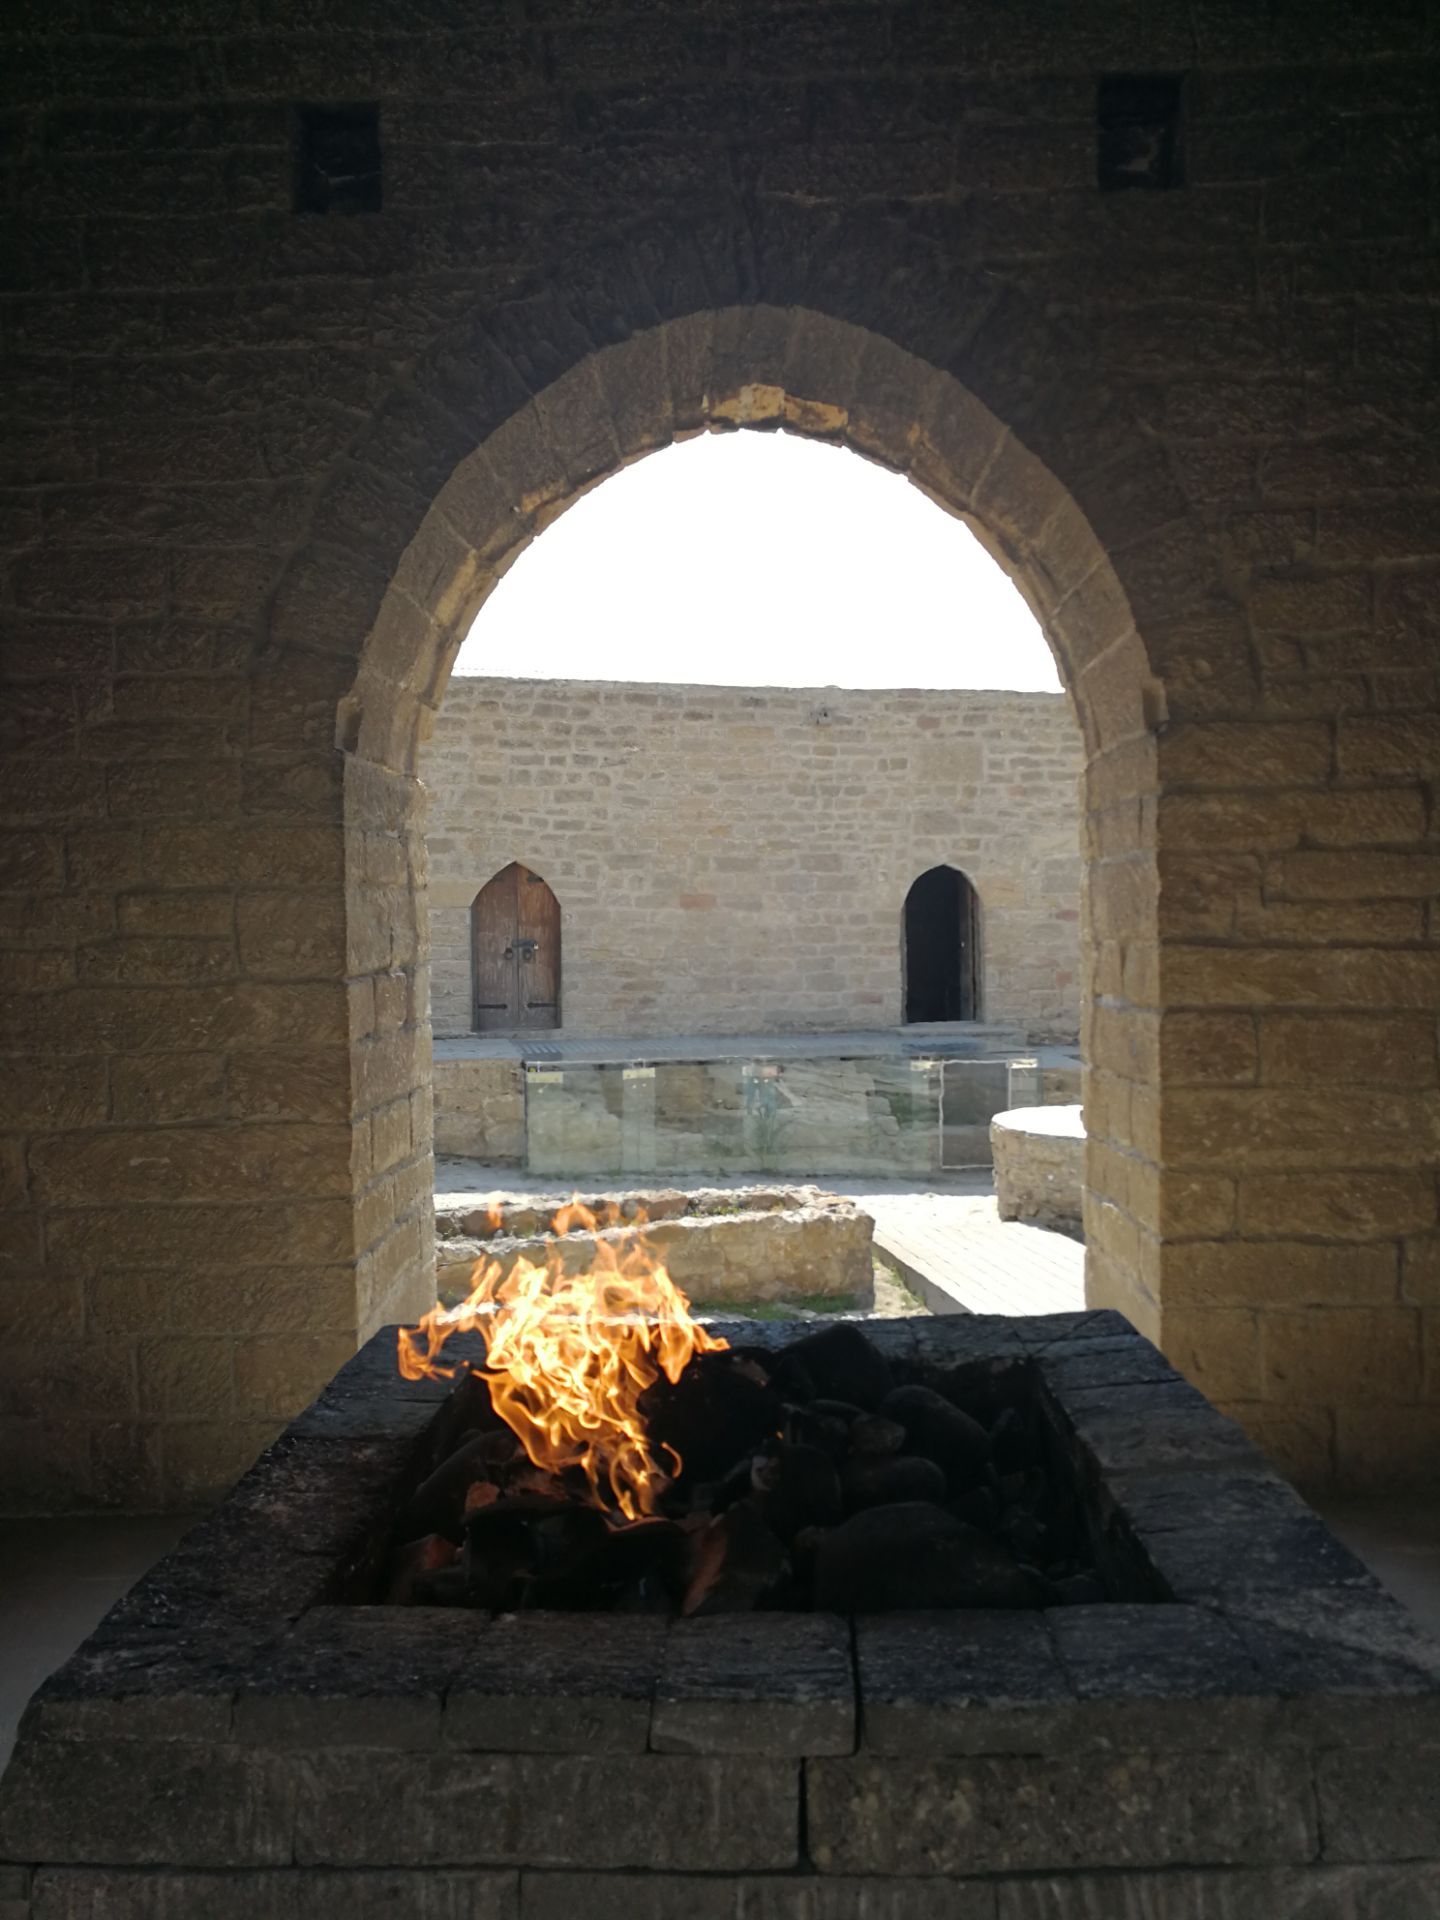 波斯语,意为火地,也就是有圣火的地方,祭祀圣火的地方),位于巴库